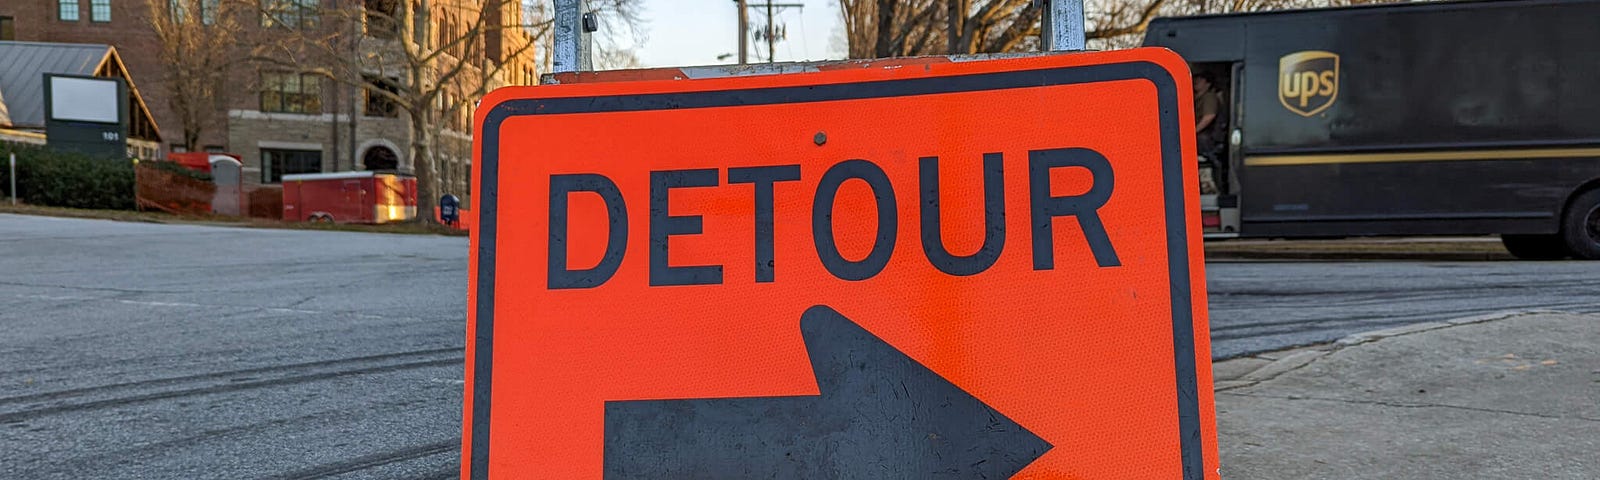 Orange Detour sign with large black arrow